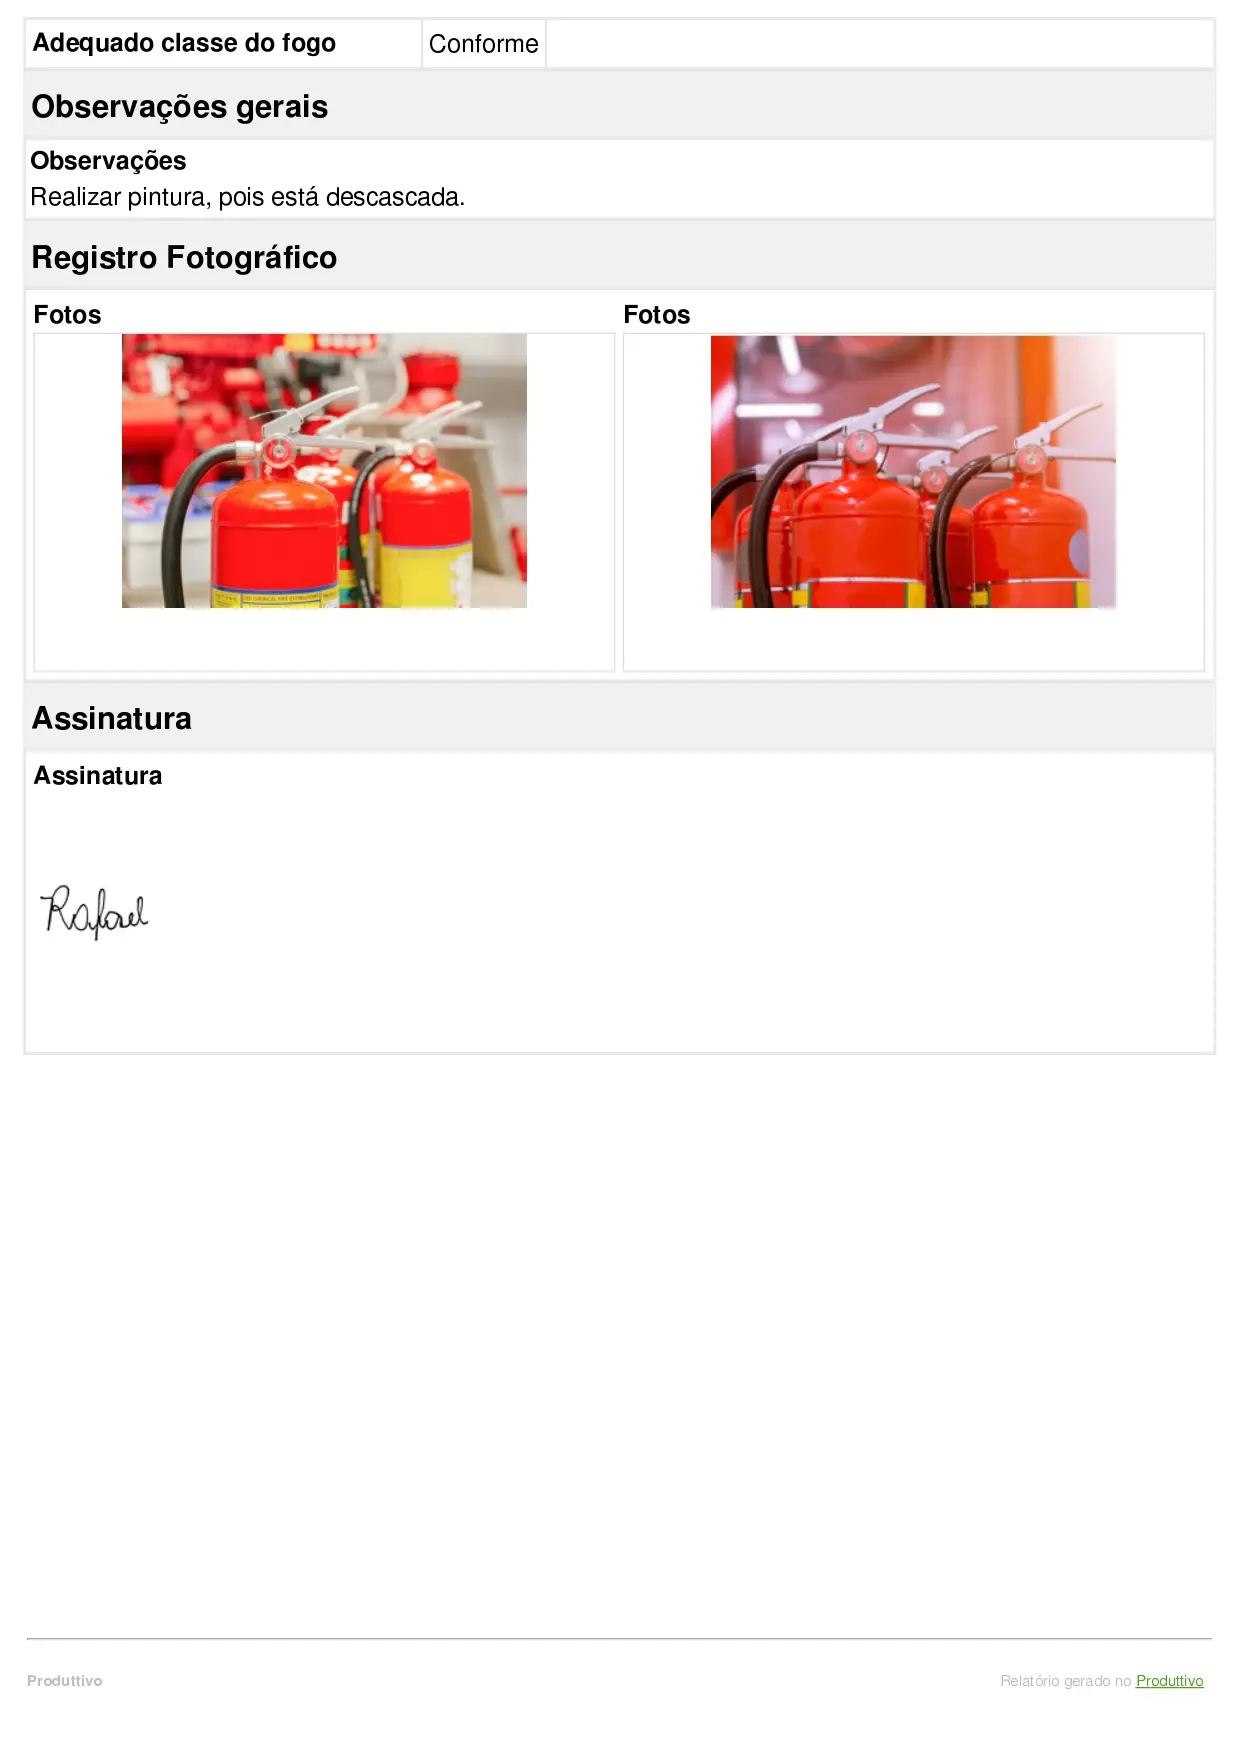 modelo de checklist de manutenção de extintores com questões de conformidade, registros fotográficos e informações do equipamento preenchidas automaticamente, página 03